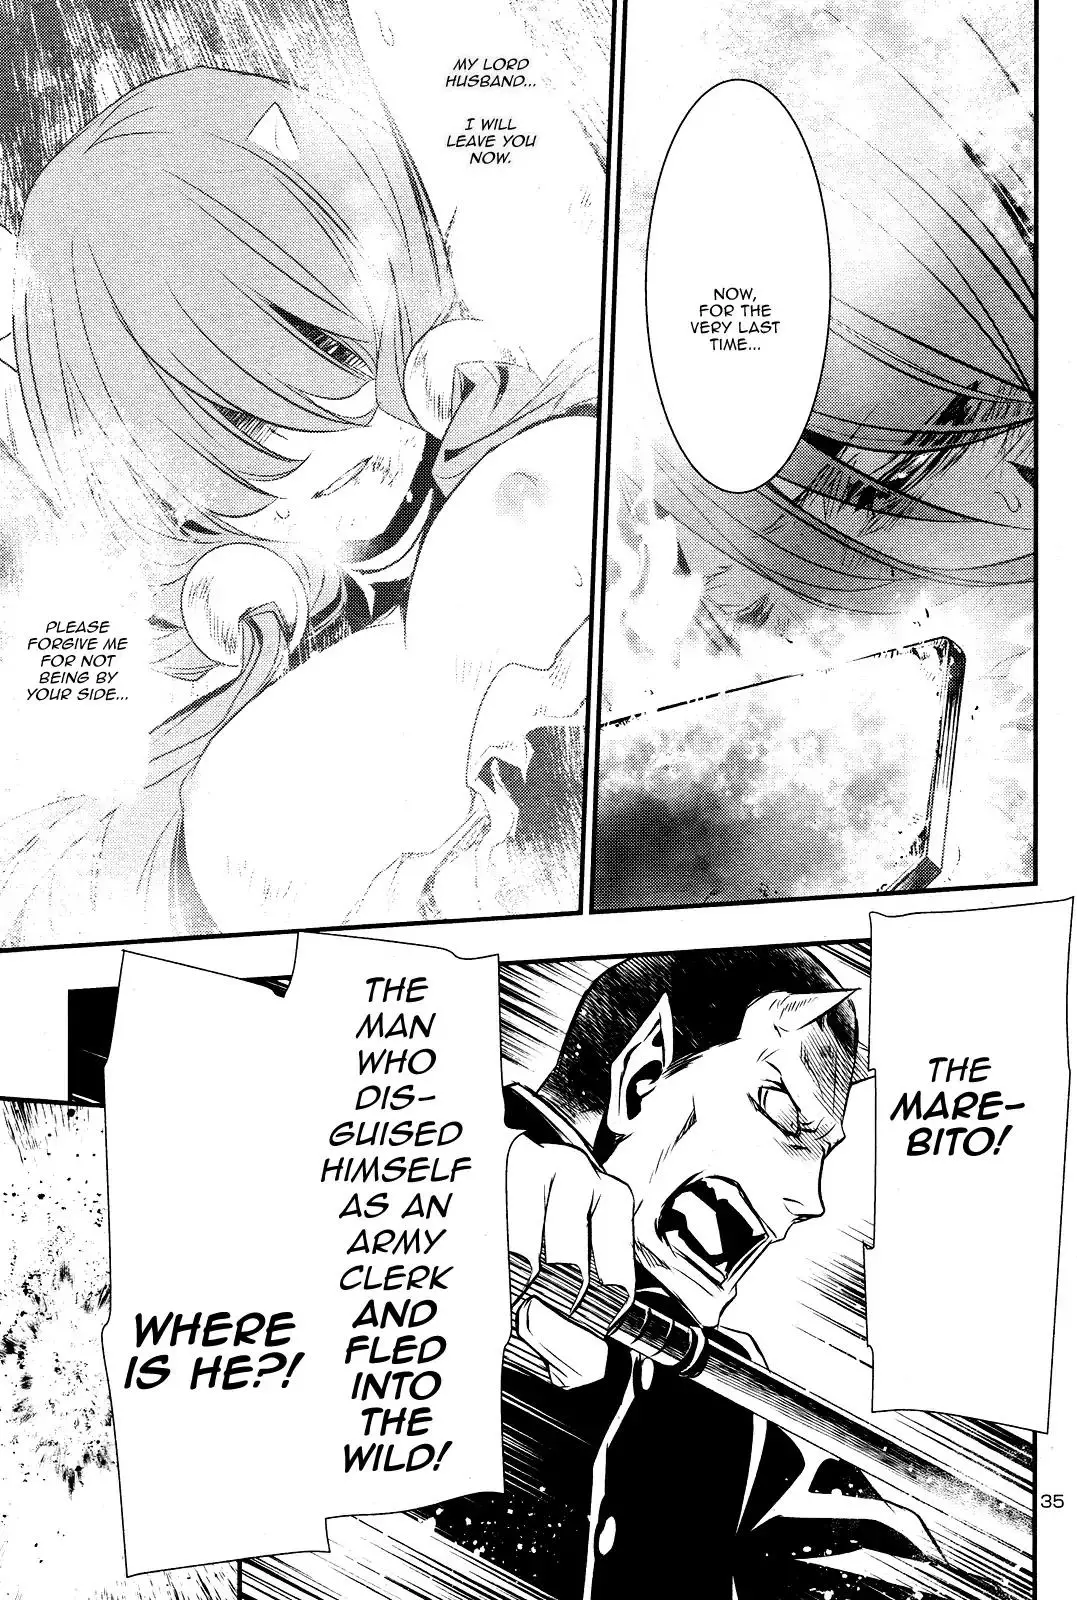 Shinju no Nectar - 23 page 33